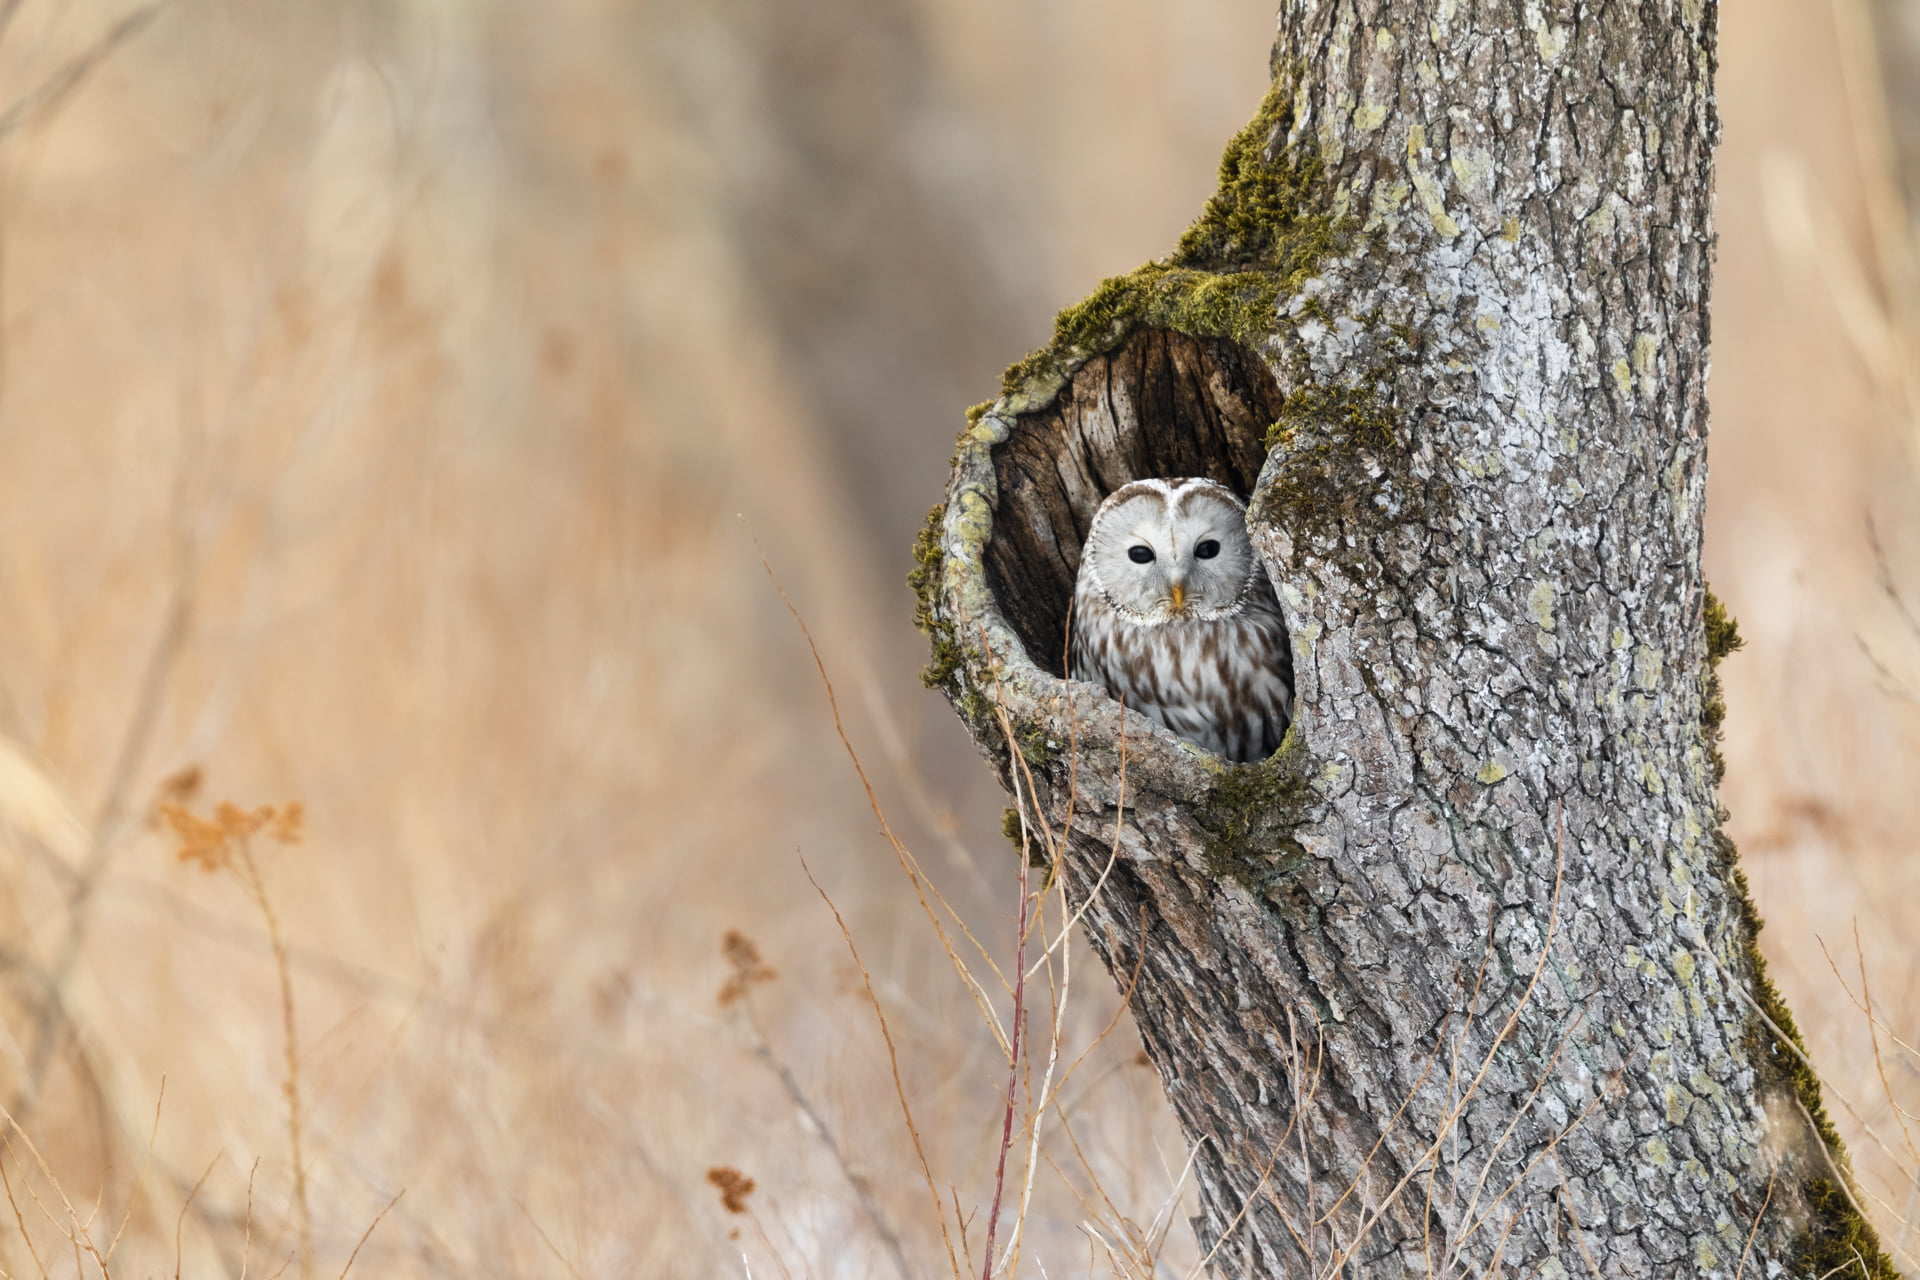 Chouette de l'Oural est dans le trou d'un arbre, Hokkaido, Japon - Ural Owl is in a hole tree, Hokkaido, Japan / Strix uralensis